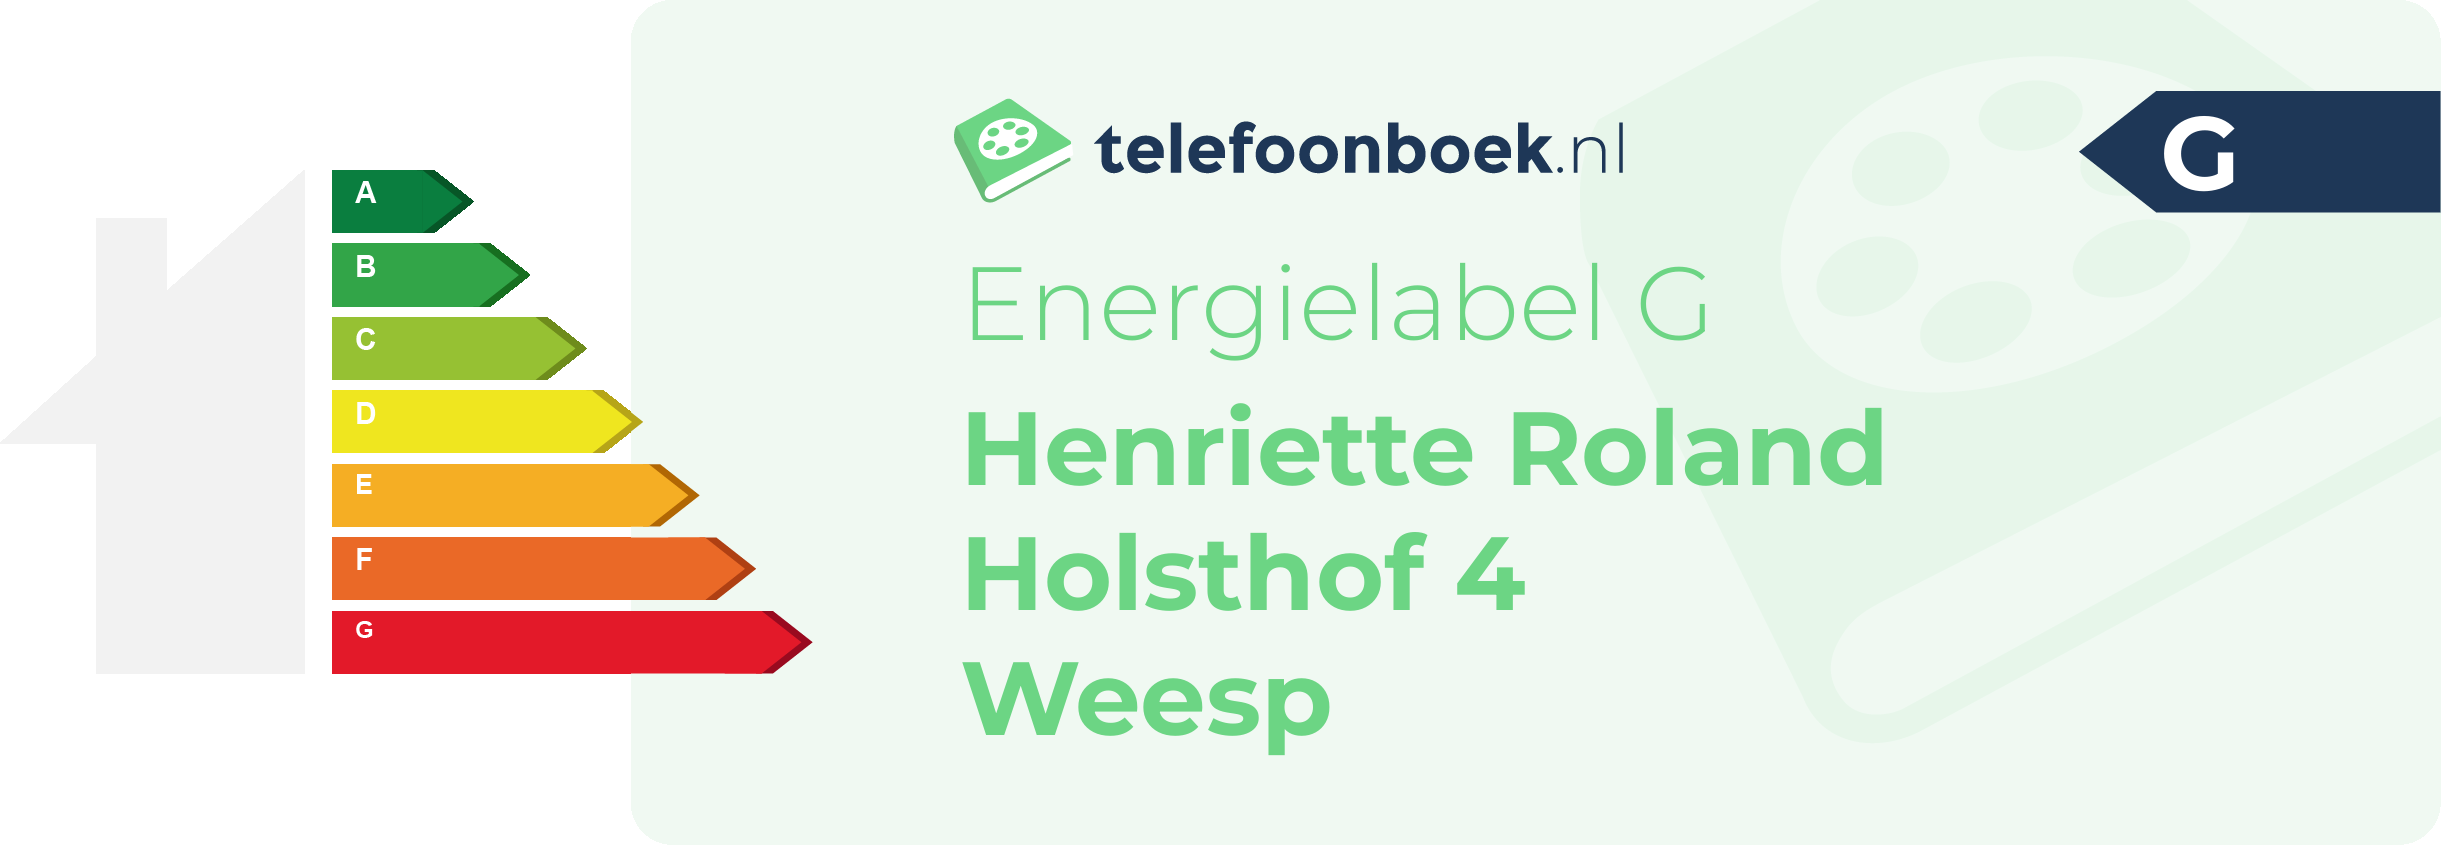 Energielabel Henriette Roland Holsthof 4 Weesp